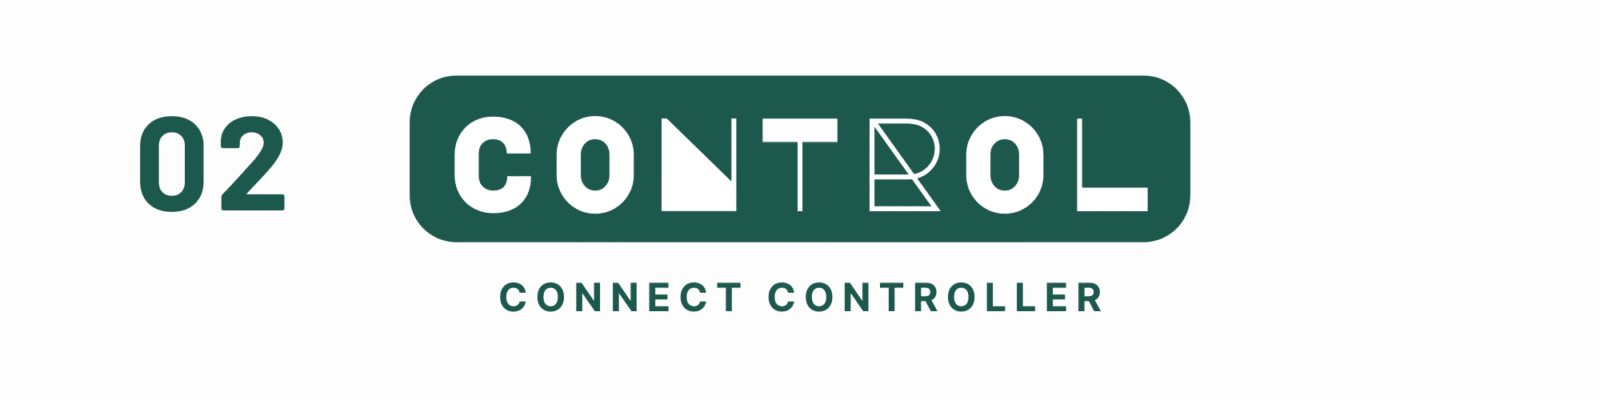 Control: Connect Controller Header